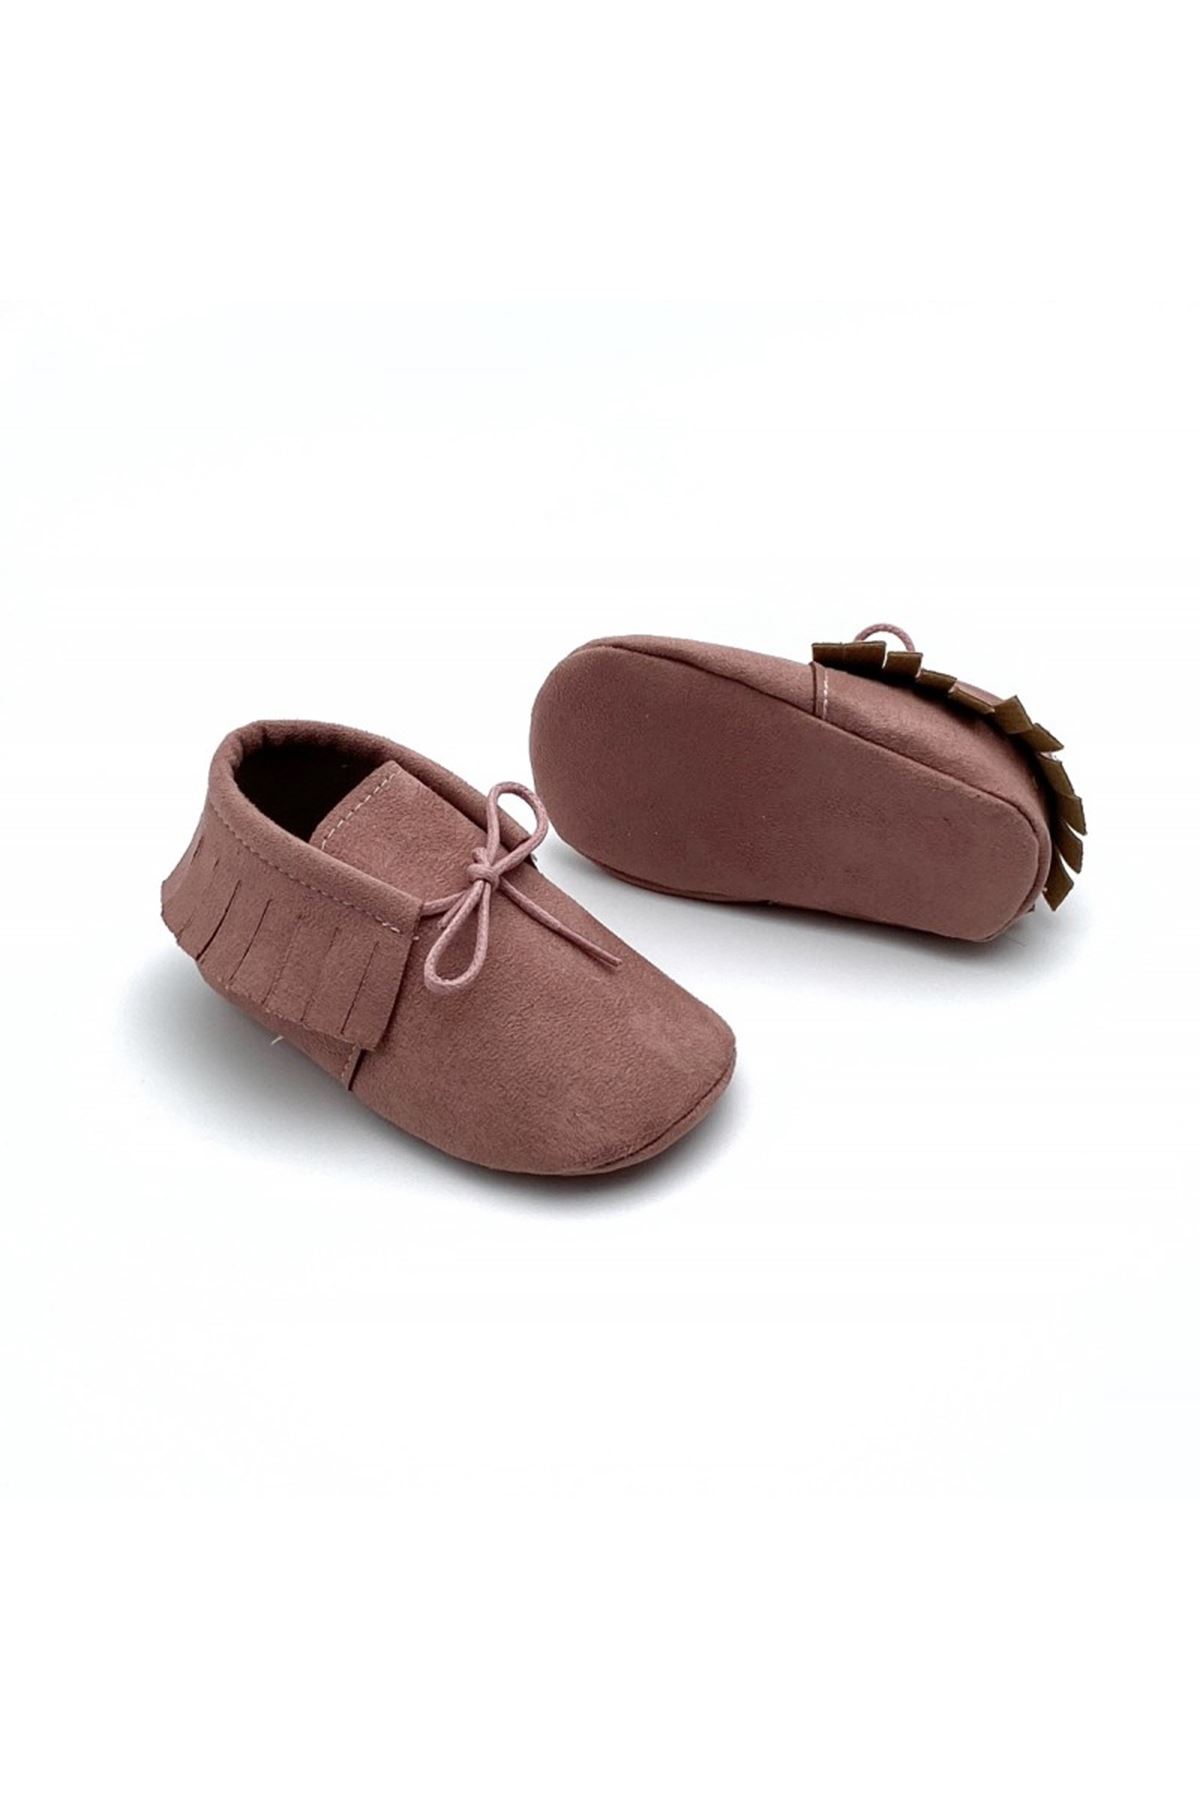 Baby Tuğra Elyapımı Bağcıklı Süet Makosen Patik Bebek Ayakkabı-Gülkurusu